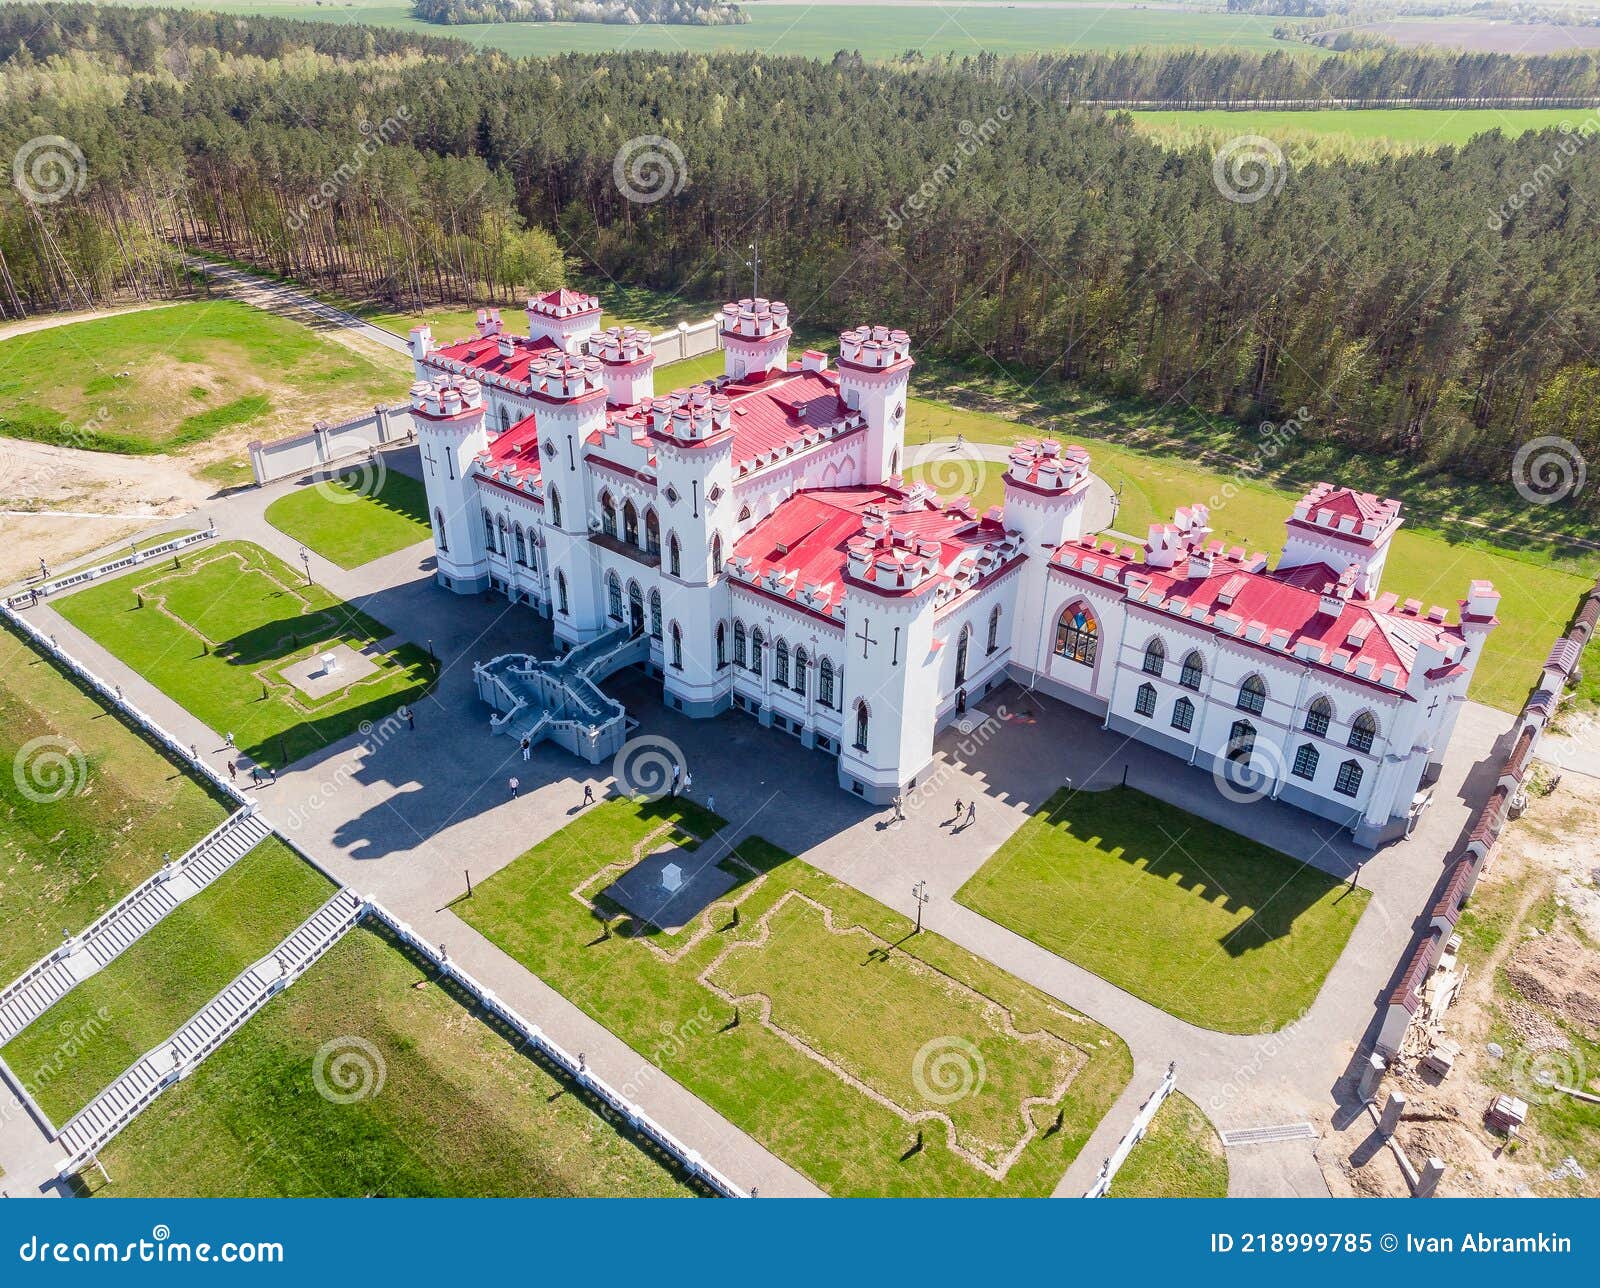 restored ancient castle-palace of puslovsky kossovo, belarus